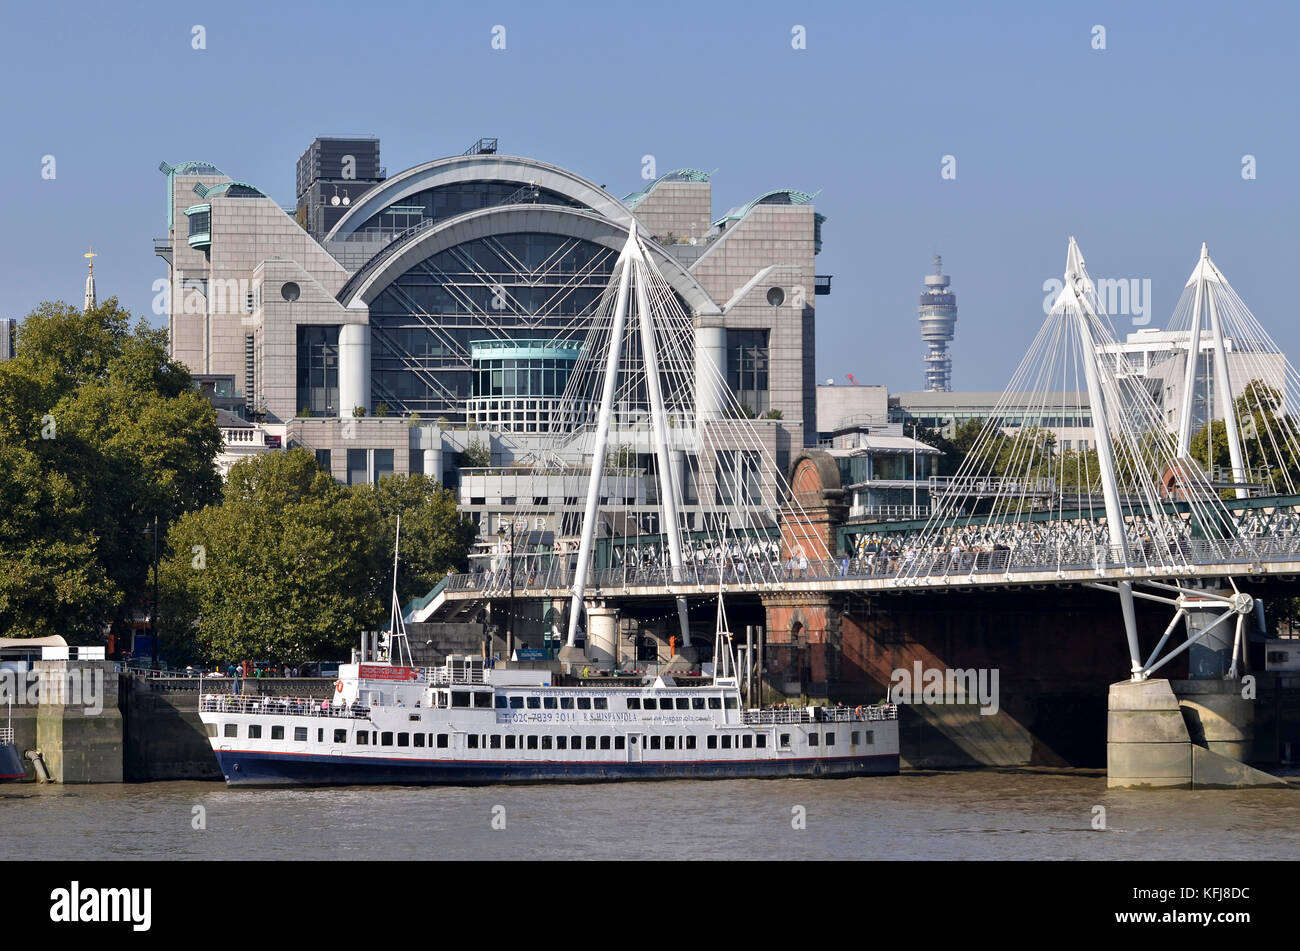 Golden Jubilee und Hungerford Brücken, Themse, London, UK. RS Hispaniola in den Vordergrund und Charing Cross Station hinter sich. Stockfoto